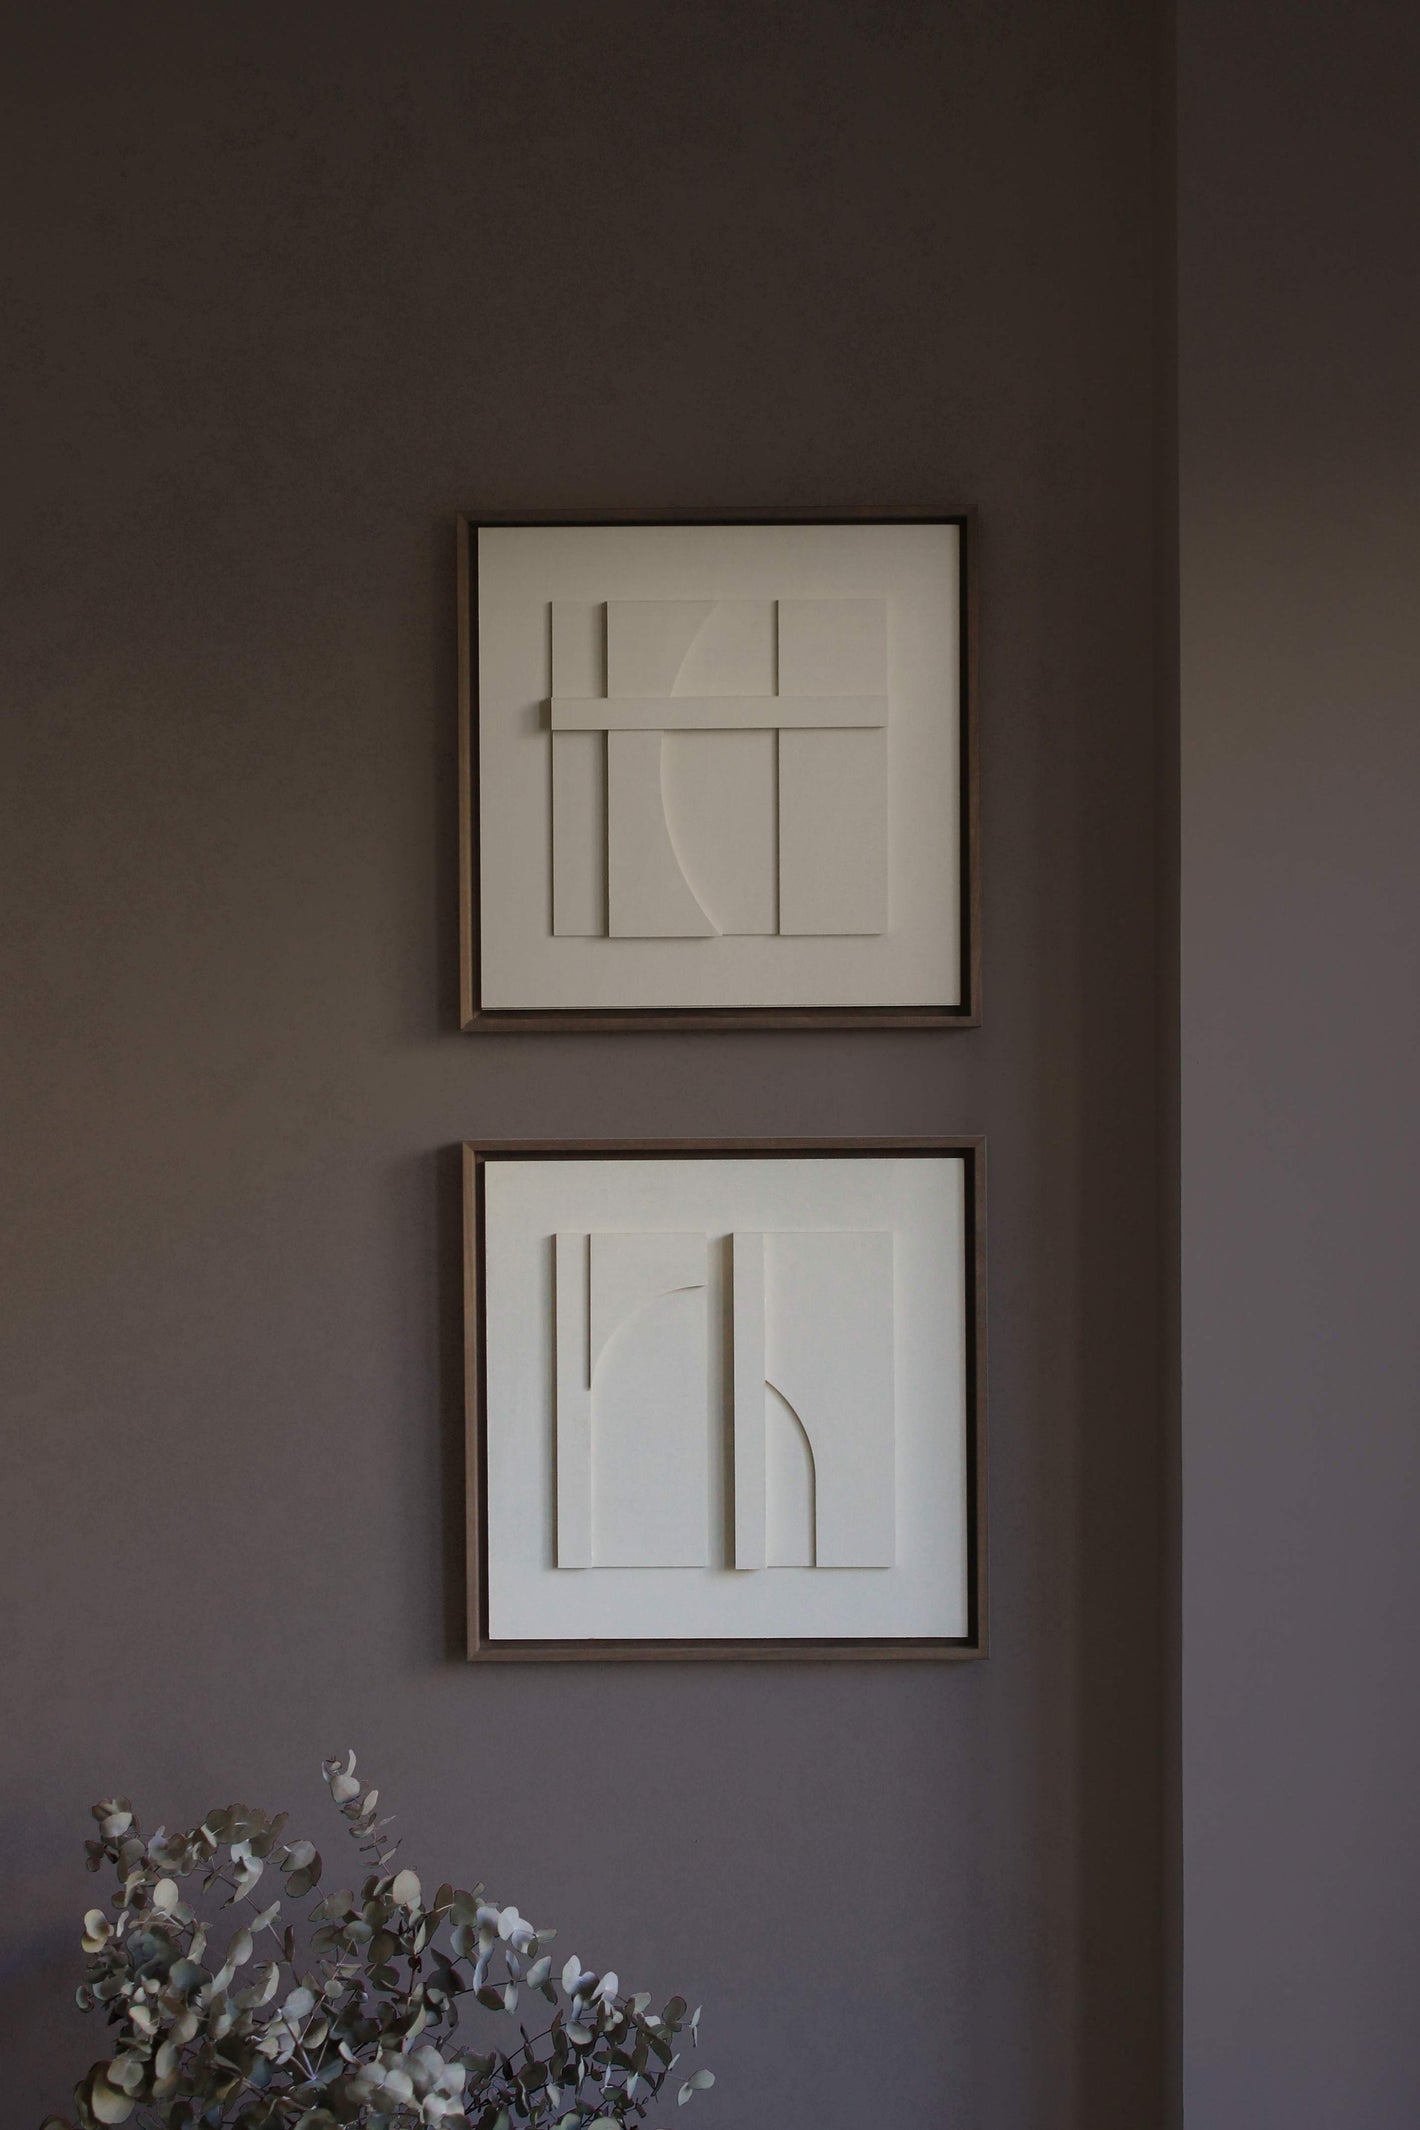 Cuadros en pareja. Set de 2 obras en color blanco, enmarcadas en madera natural de mansonia.